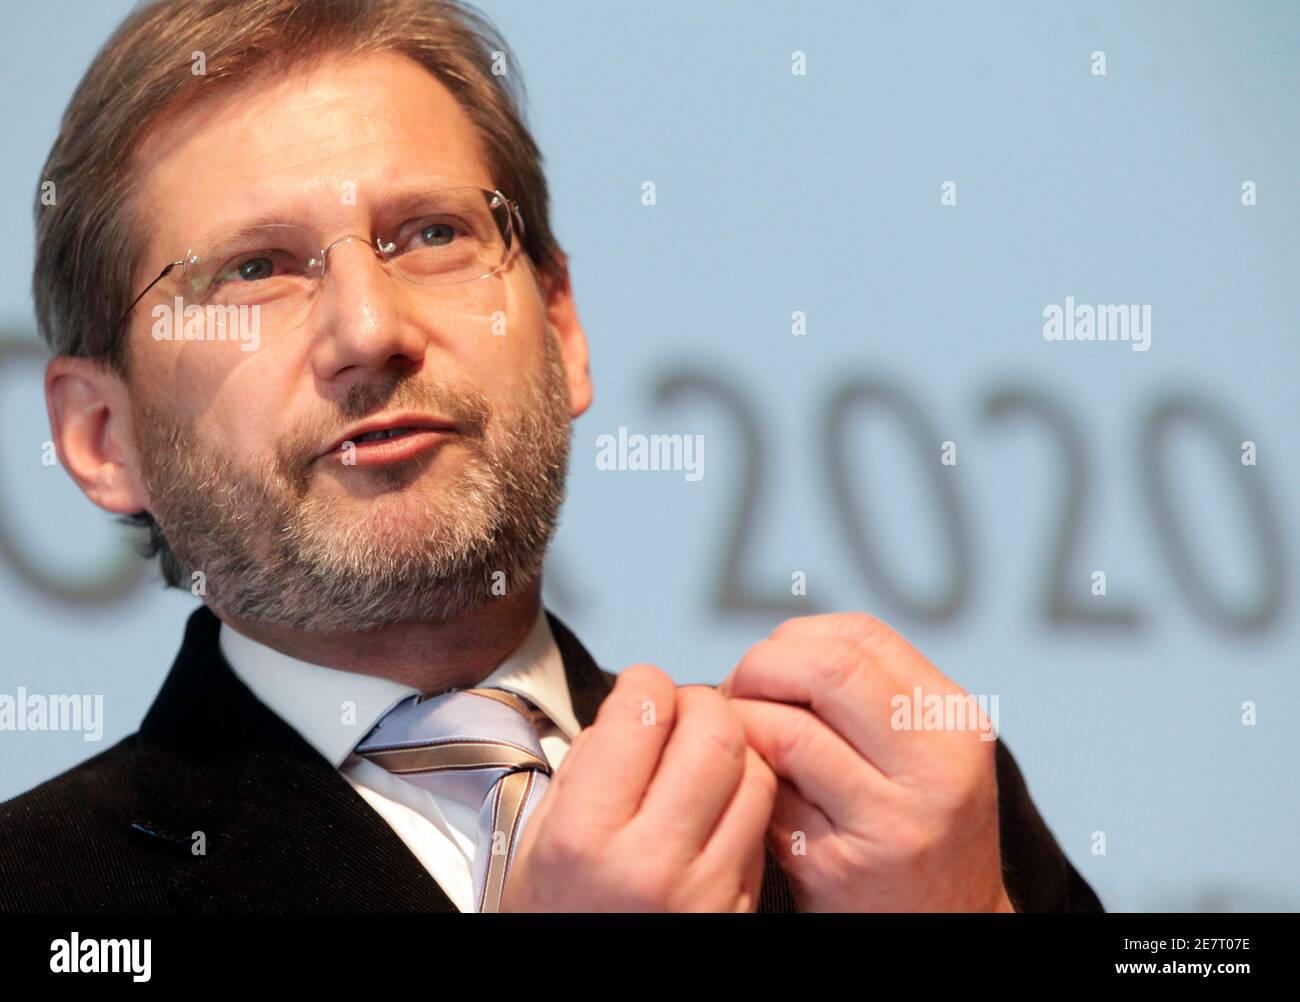 EU-kommissar Johannes Hahn zeigt eine Rede während der Veranstaltung "EU 2020: Die Zukunft der Lissabon-Strategie" (EU 2020: Die Zukunft der Lissabon-Strategie) in Wien am 22. März 2010. REUTERS/Herwig Prammer (ÖSTERREICH - Tags: POLITIK-KOPFSCHUSS) Stockfoto